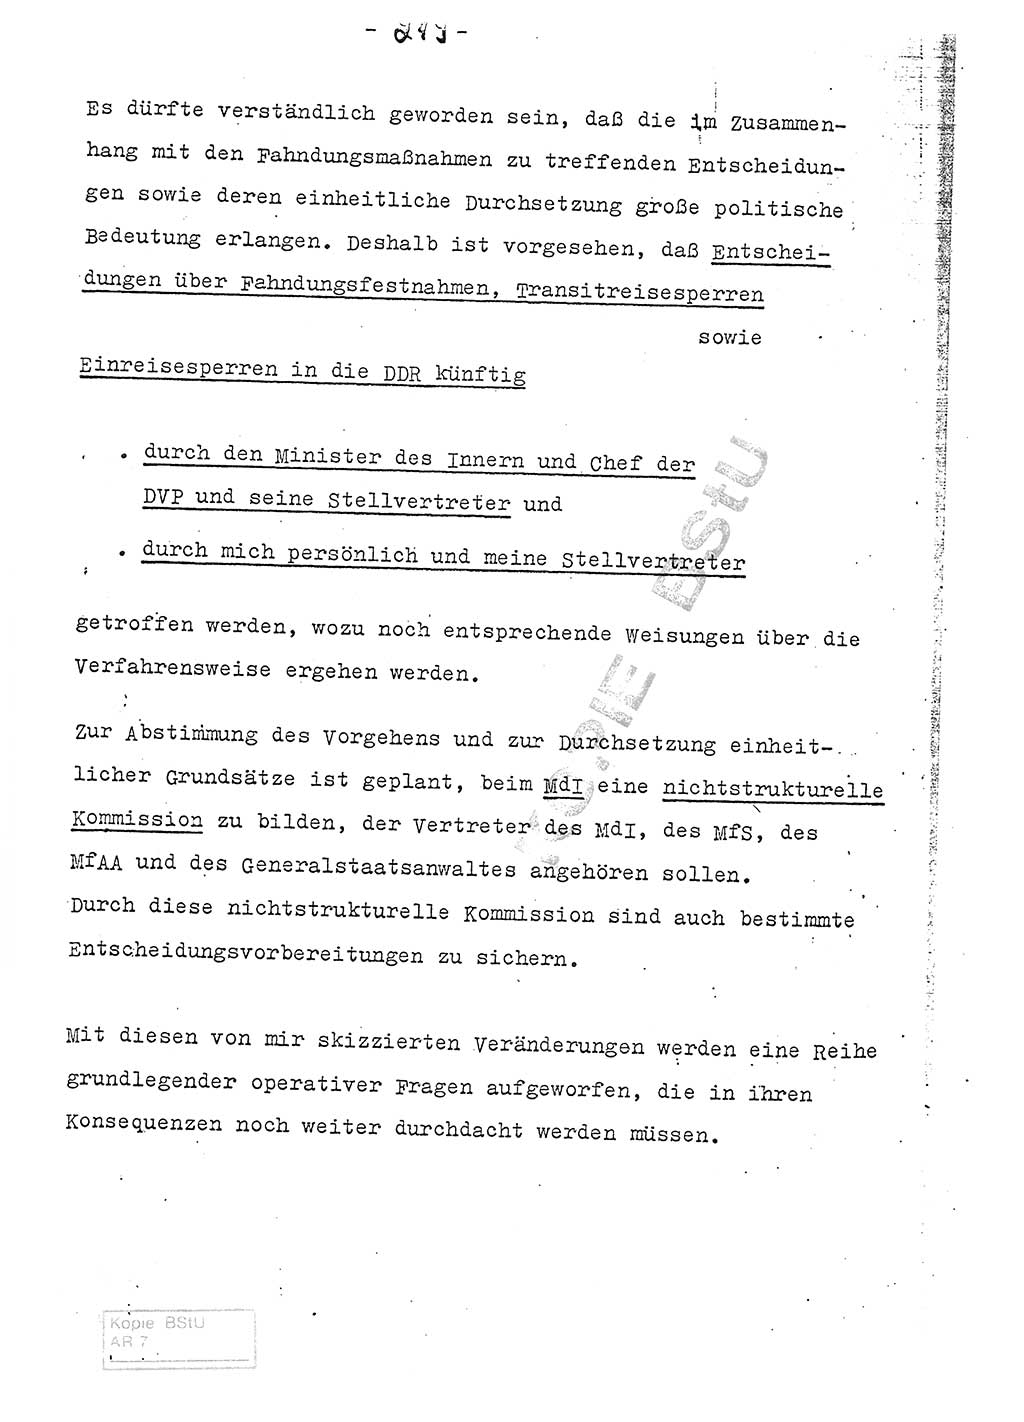 Referat (Entwurf) des Genossen Minister (Generaloberst Erich Mielke) auf der Dienstkonferenz 1972, Ministerium für Staatssicherheit (MfS) [Deutsche Demokratische Republik (DDR)], Der Minister, Geheime Verschlußsache (GVS) 008-150/72, Berlin 25.2.1972, Seite 219 (Ref. Entw. DK MfS DDR Min. GVS 008-150/72 1972, S. 219)